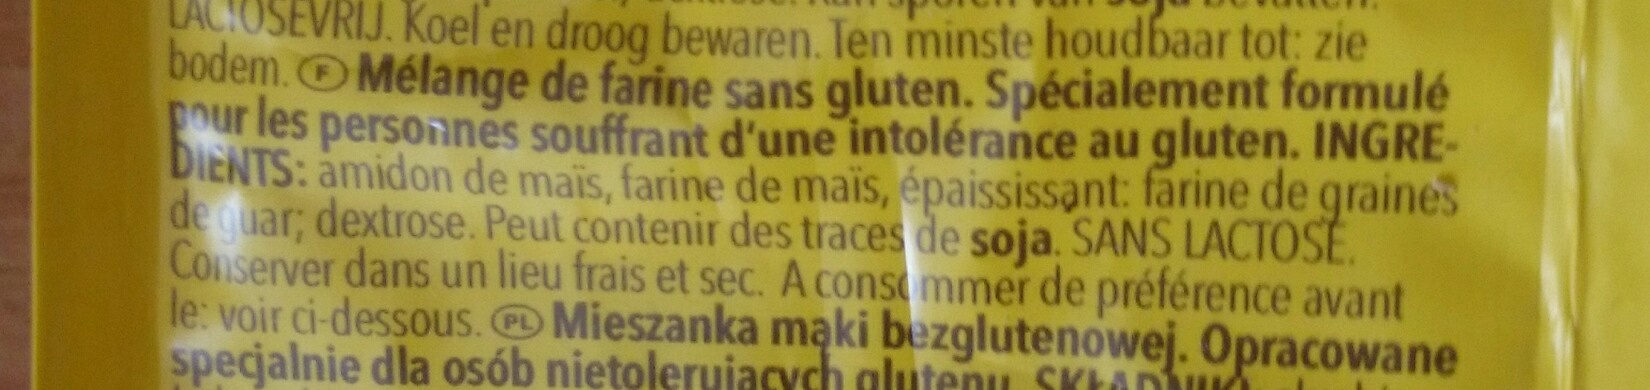 farine sans gluten - Ingredients - fr